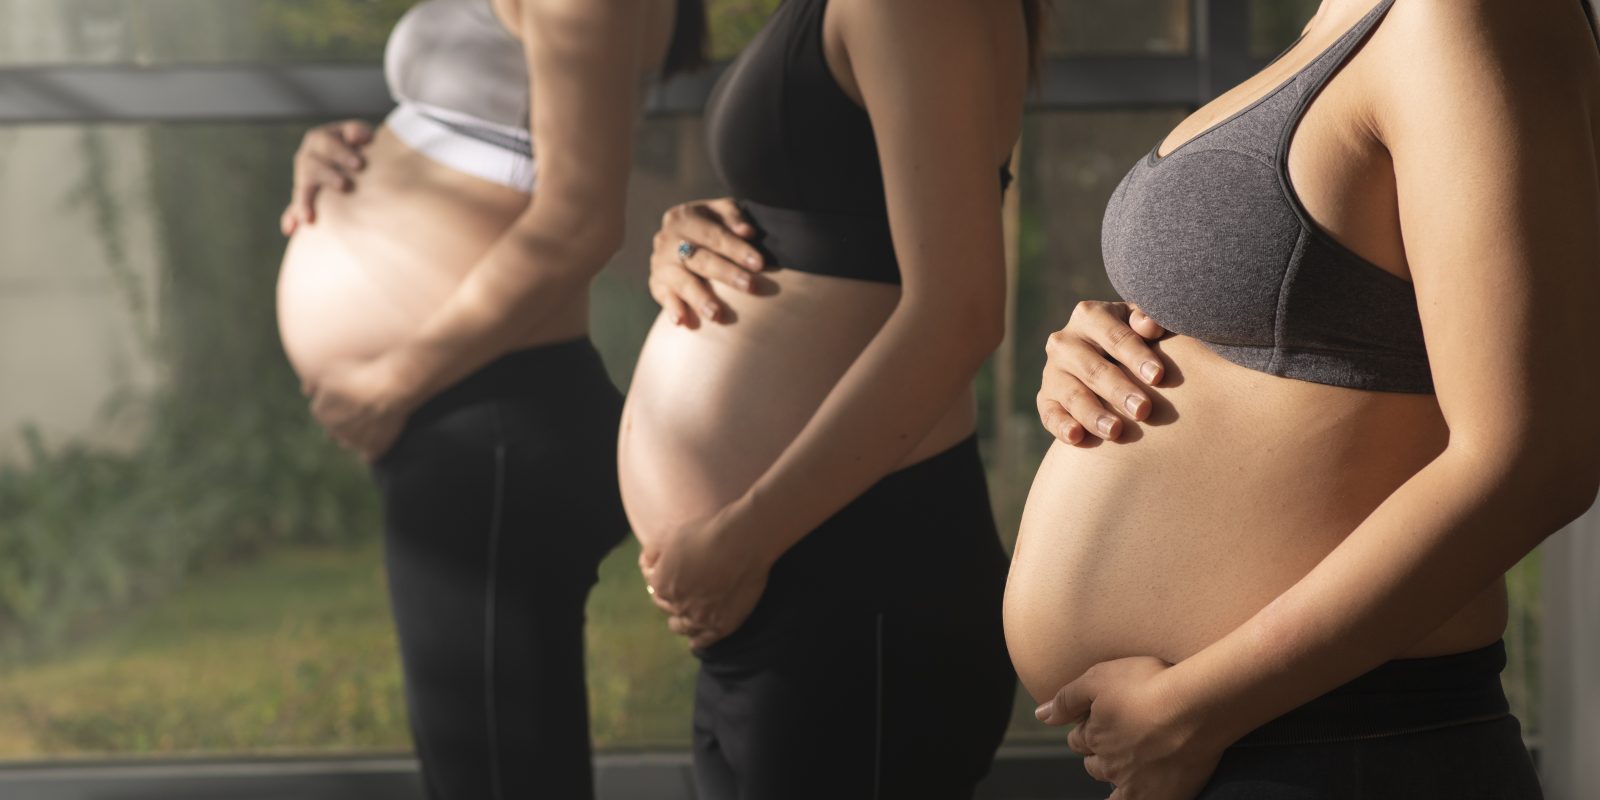 Imagens de mulheres grávidas para ilustrar matérias de mitos e verdades durante a gestação.